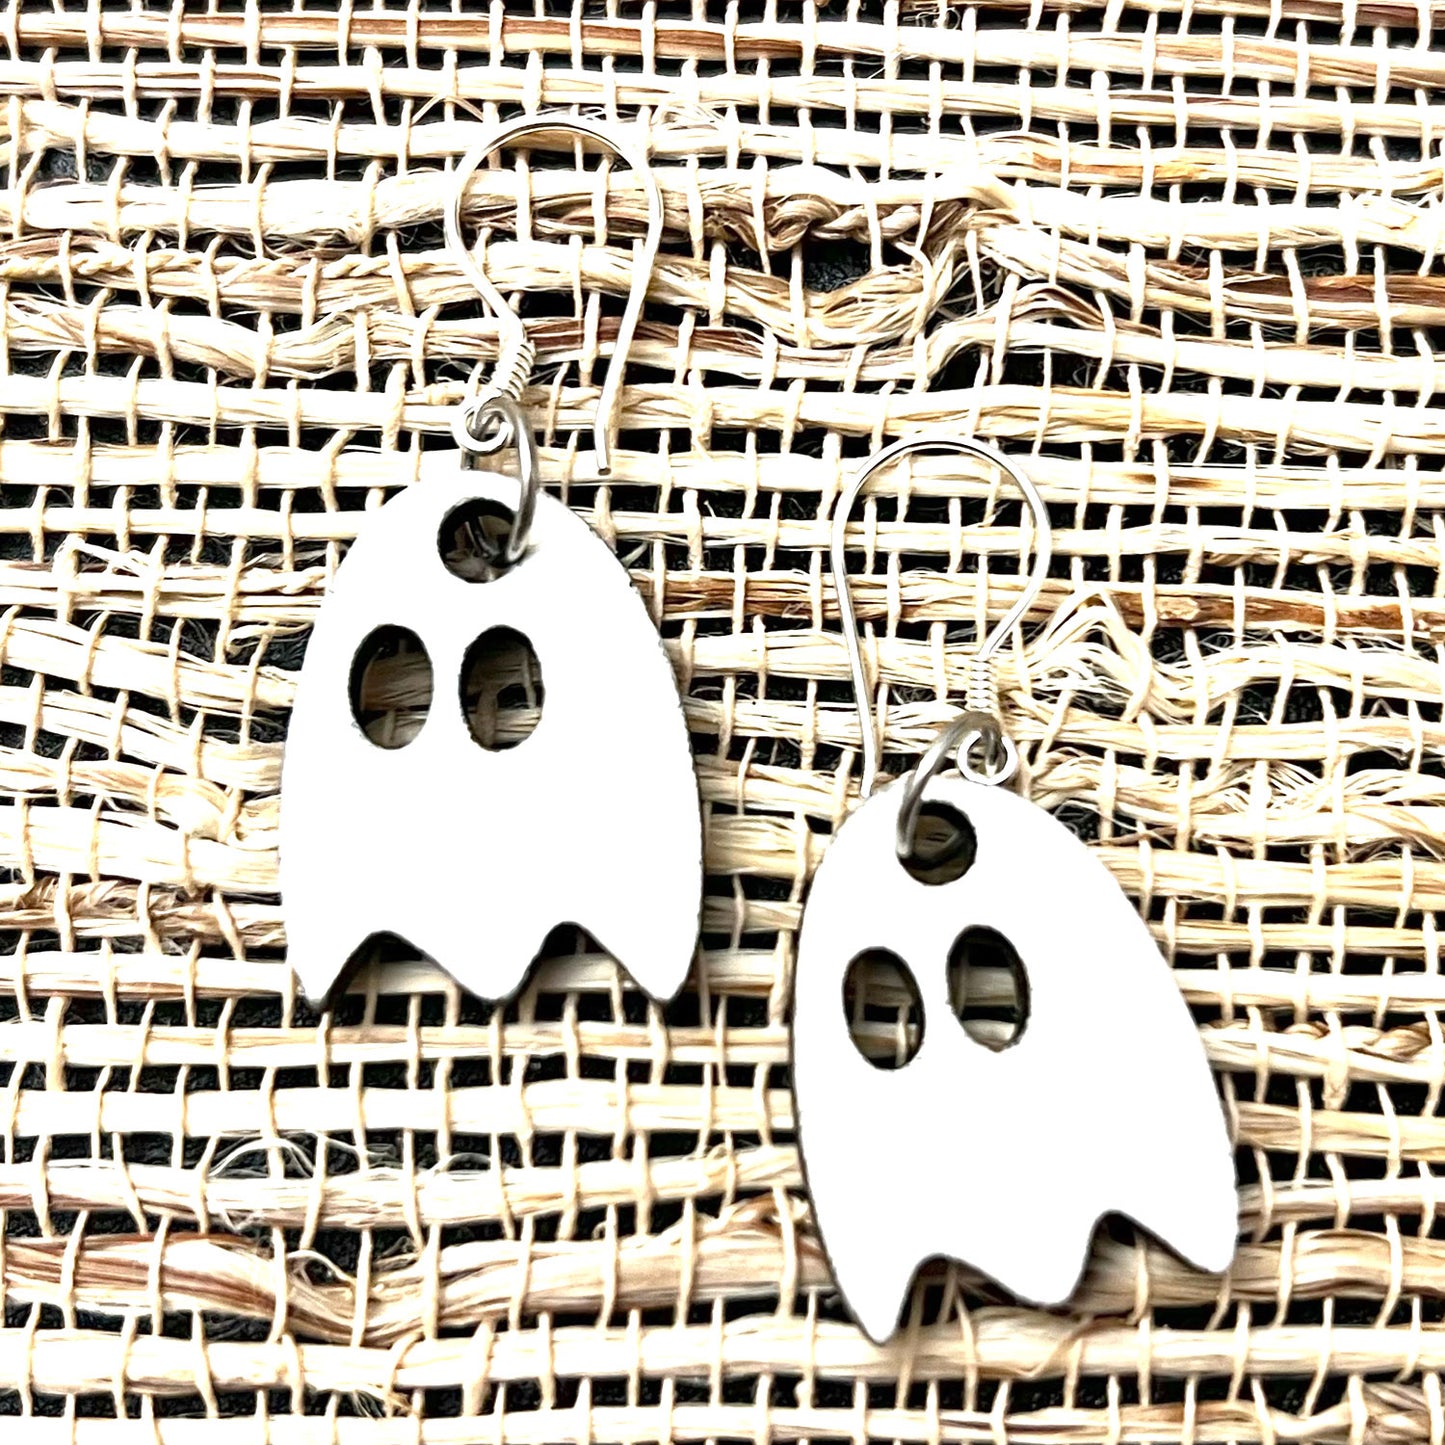 Spooky Ghost Earrings